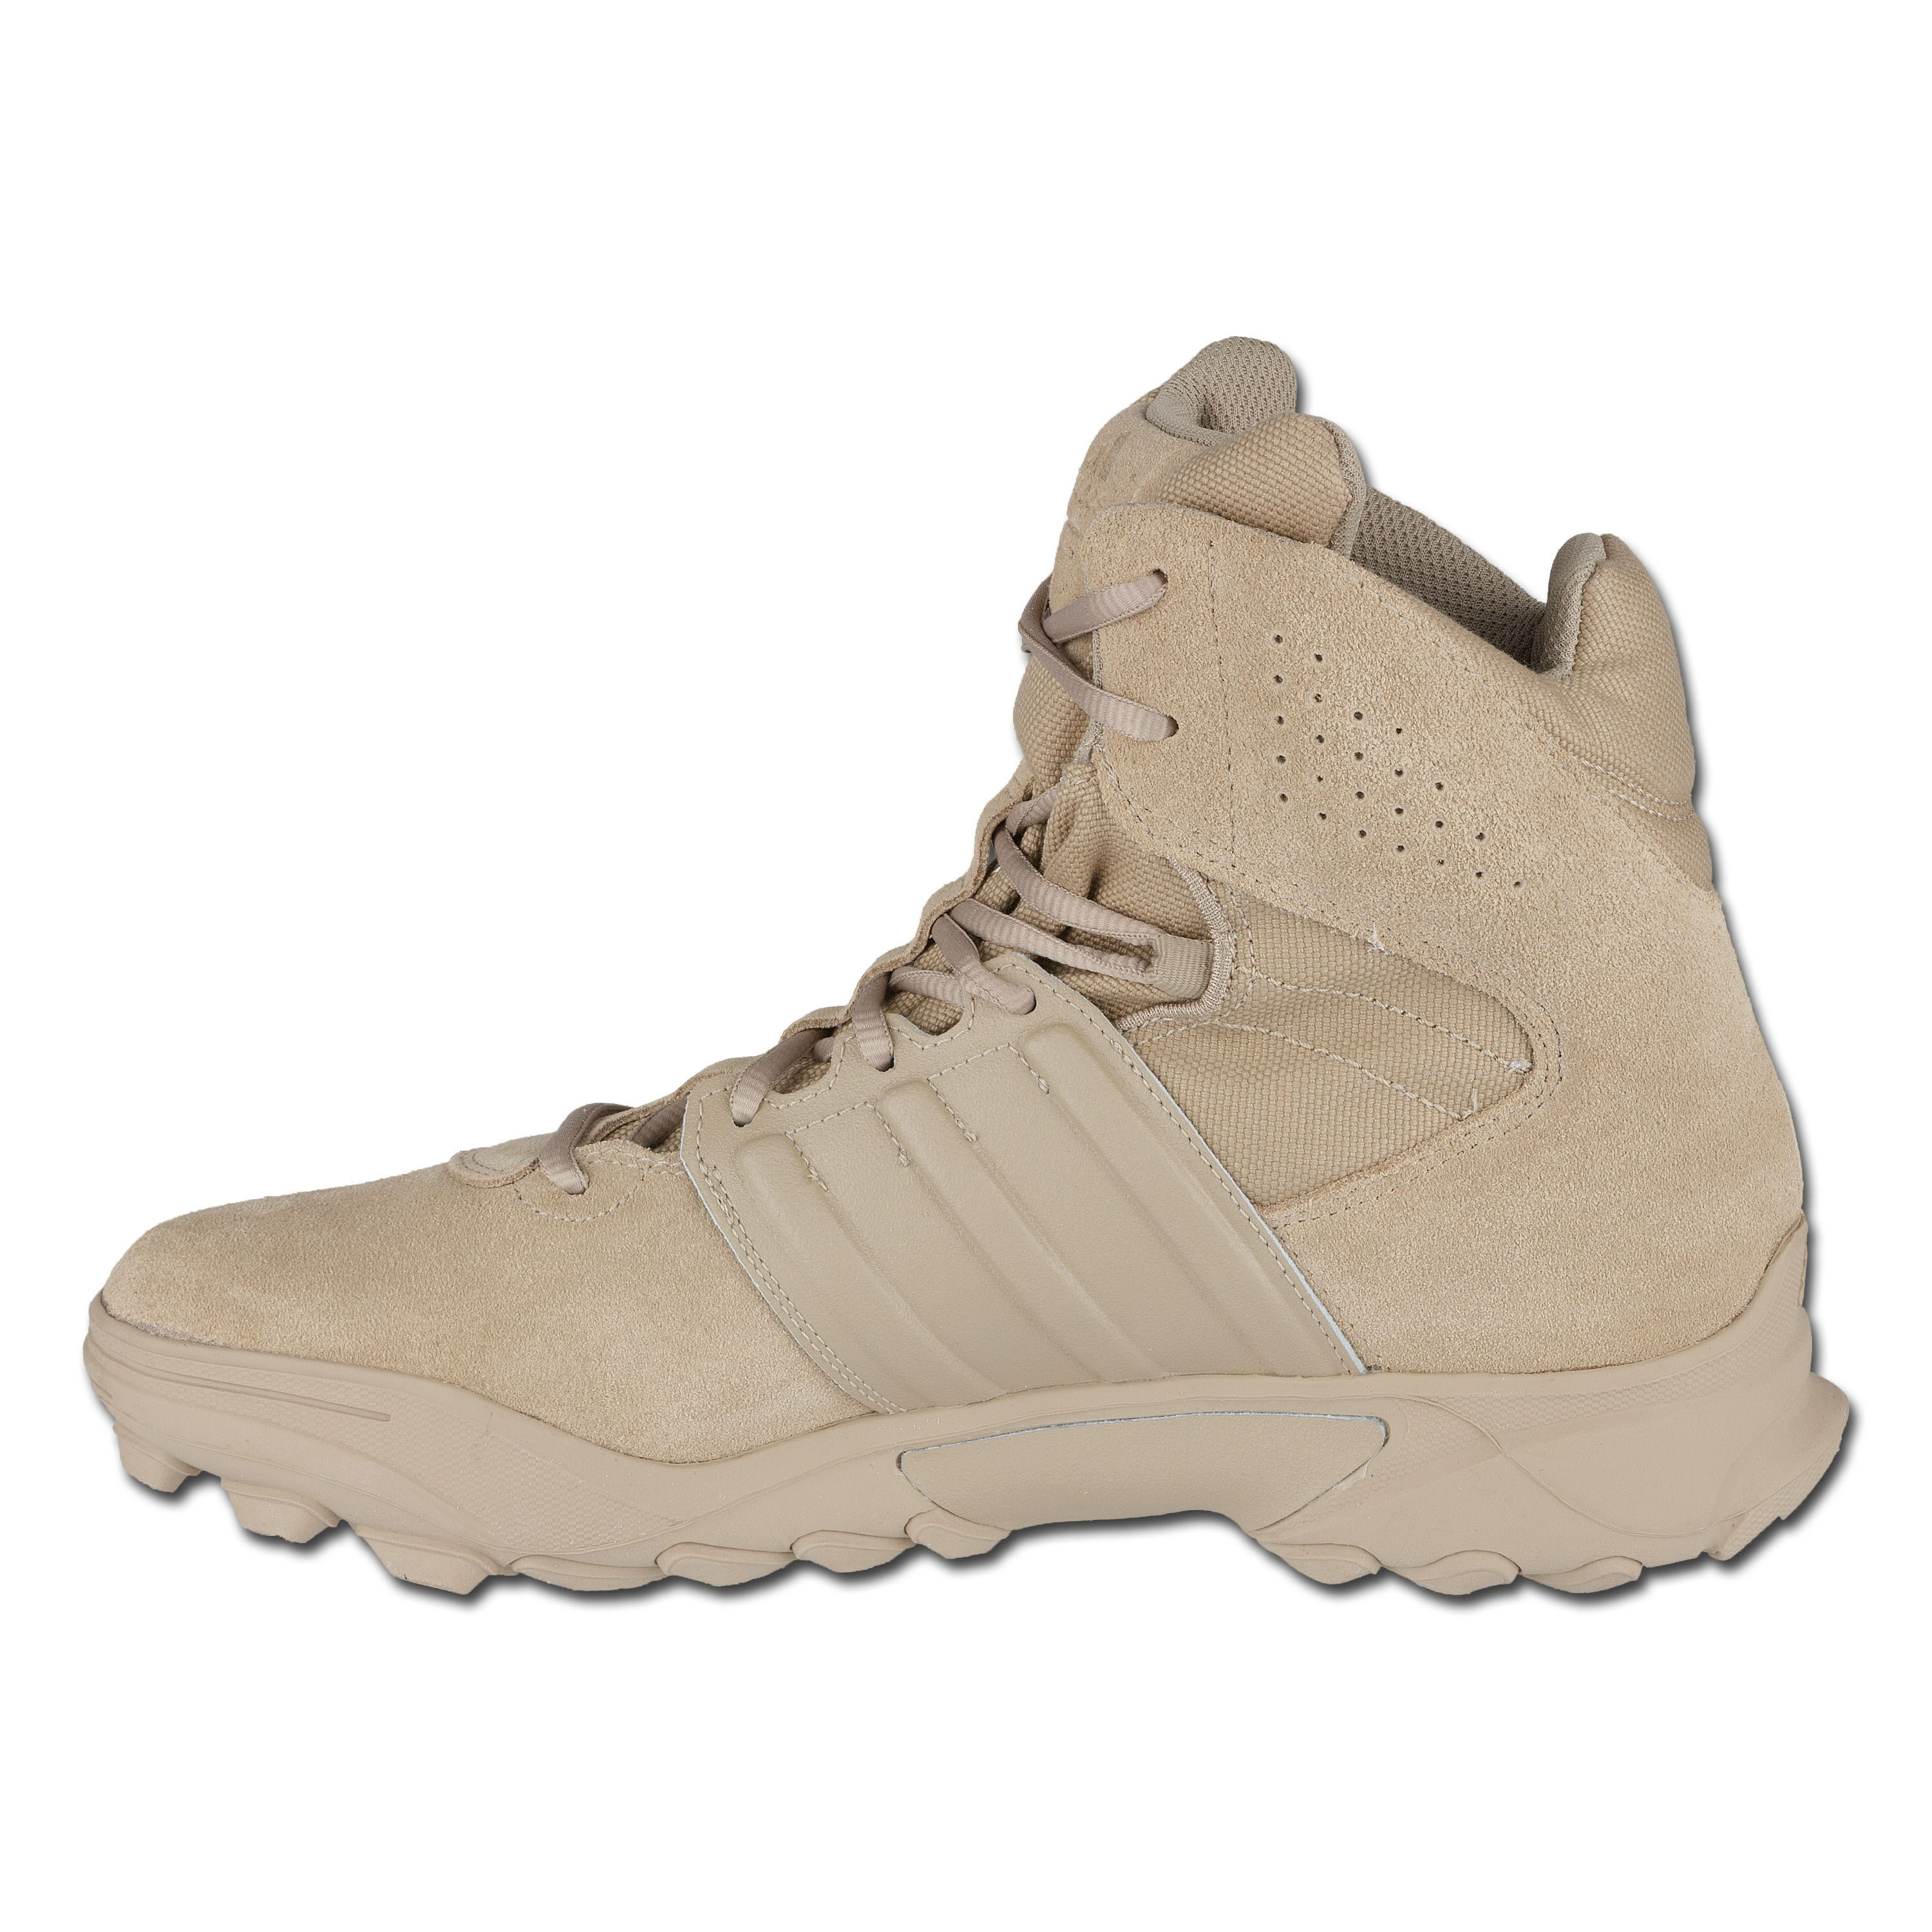 adidas gsg 9.3 desert low boots